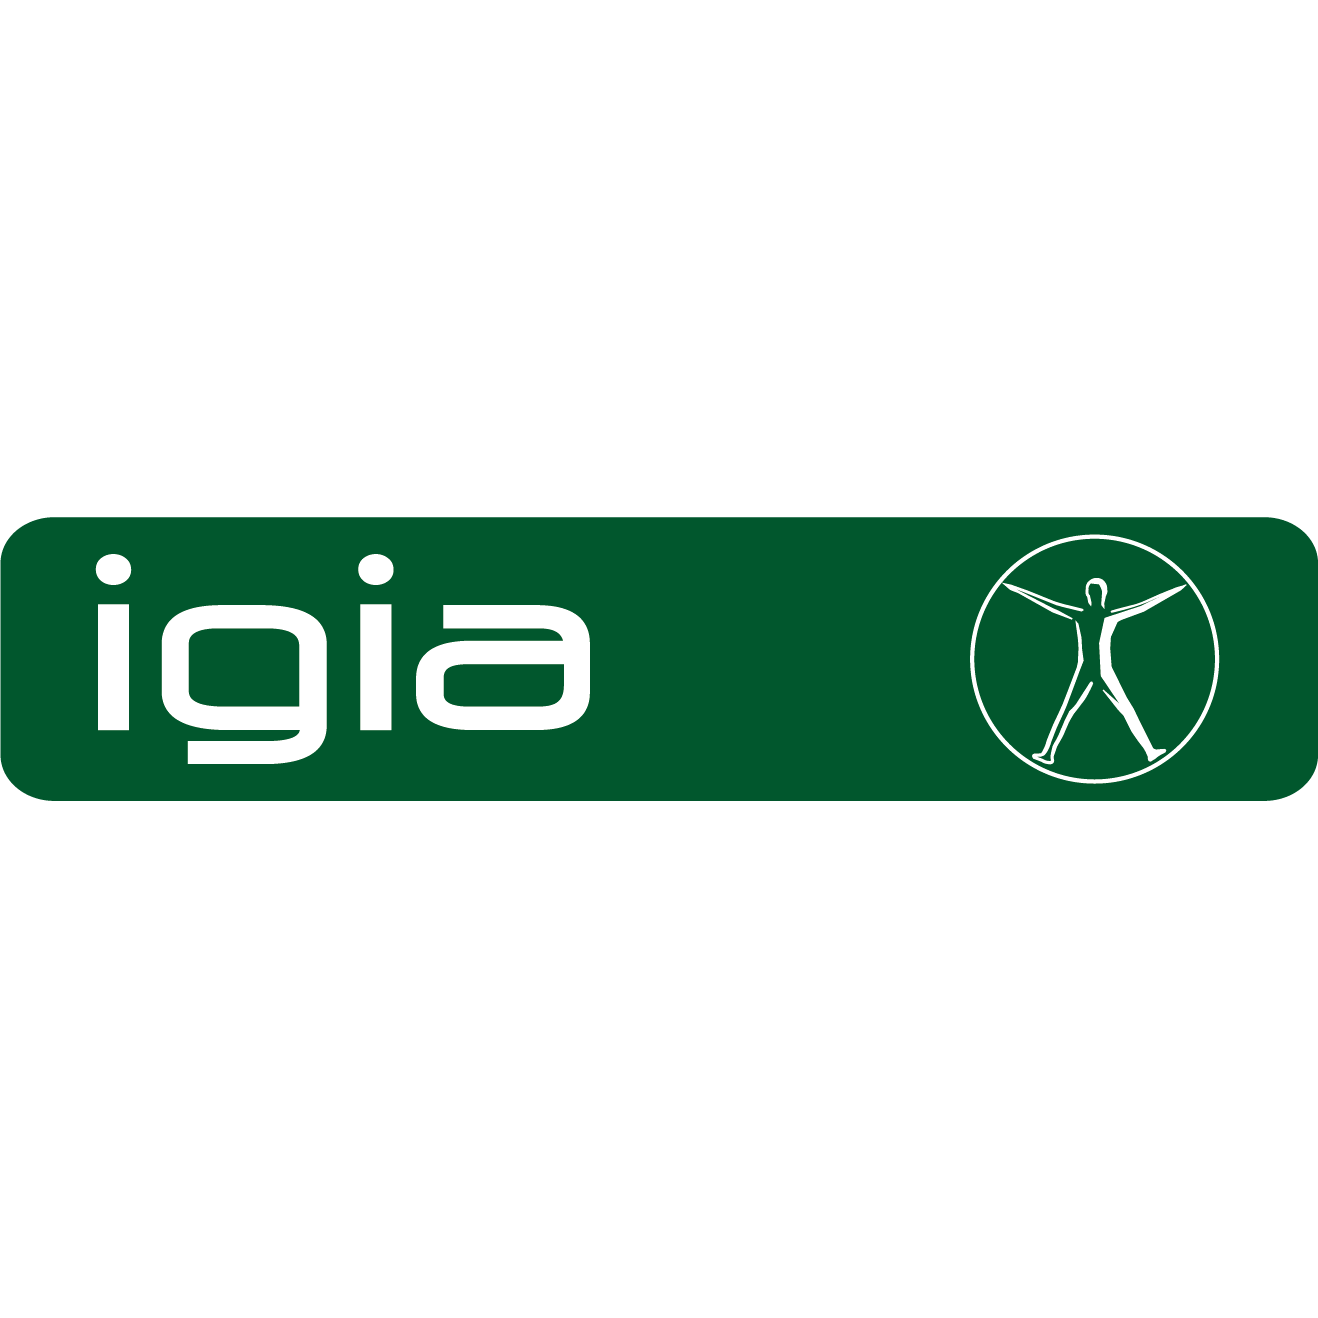 igia – Ambulatorium für Physiotherapie in Salzburg Aigen